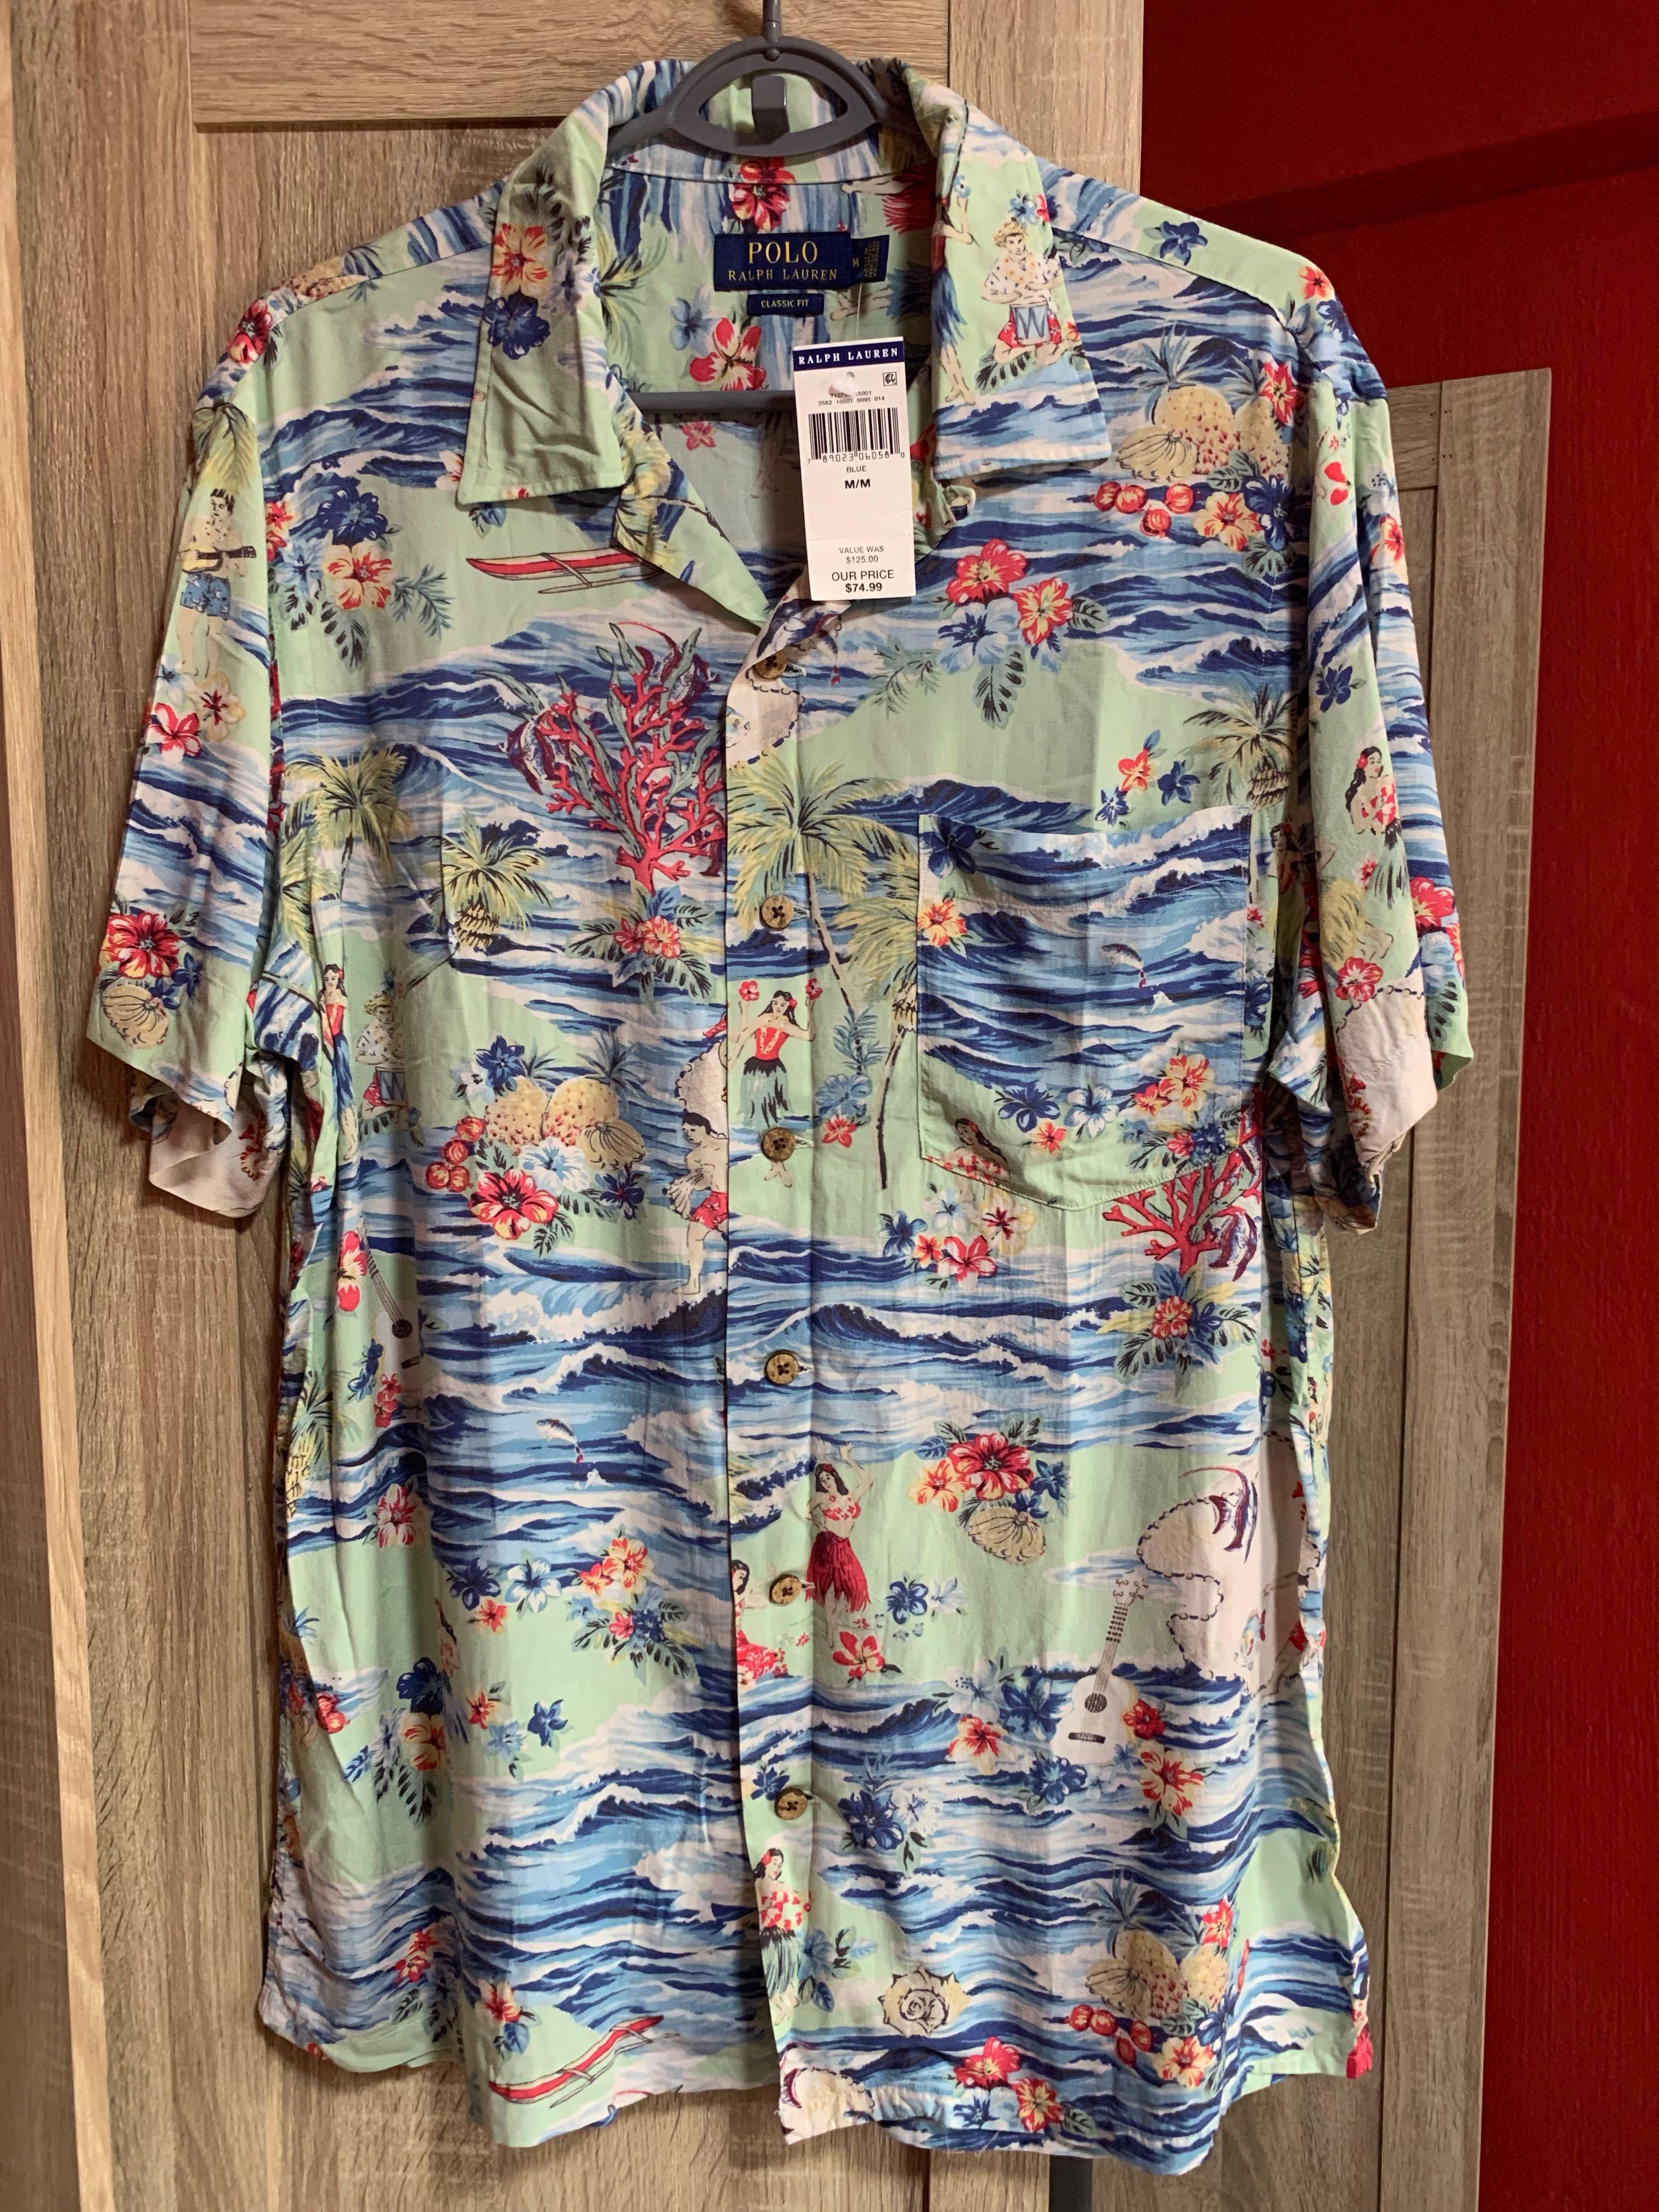 Polo Ralph Lauren beach shirt, Men's 